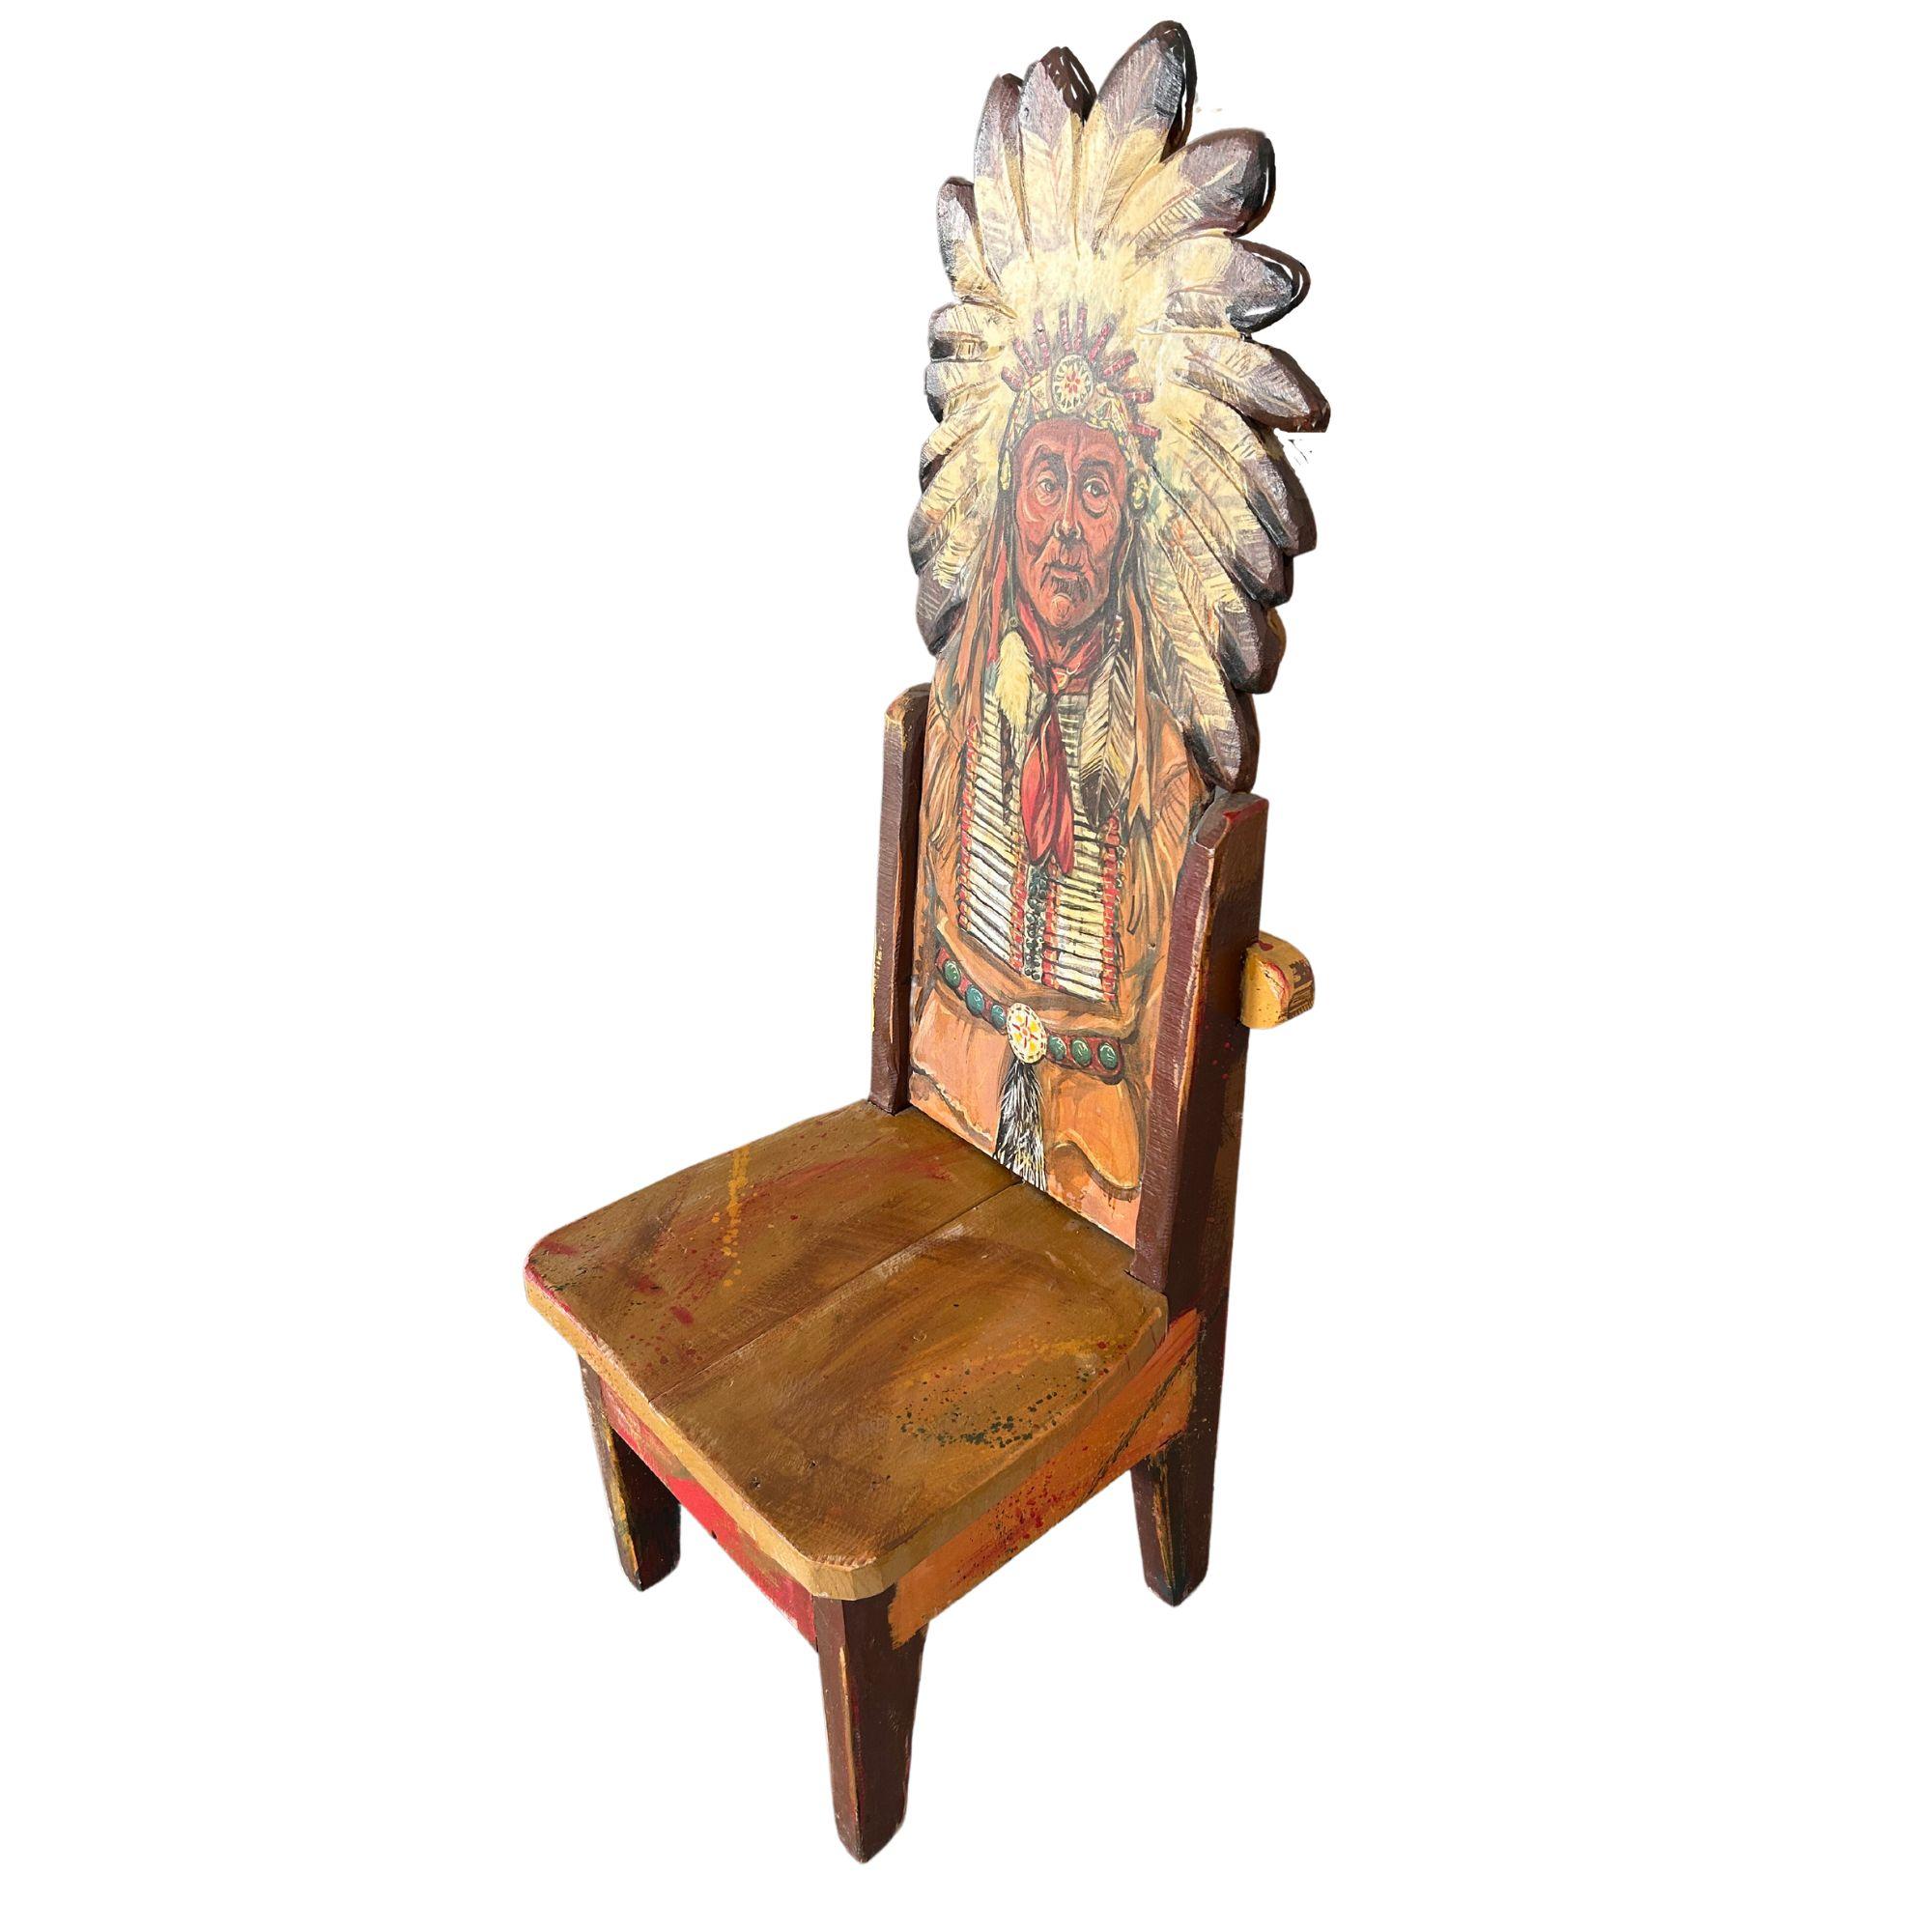 Chaise d'art populaire amérindien peinte à la main.